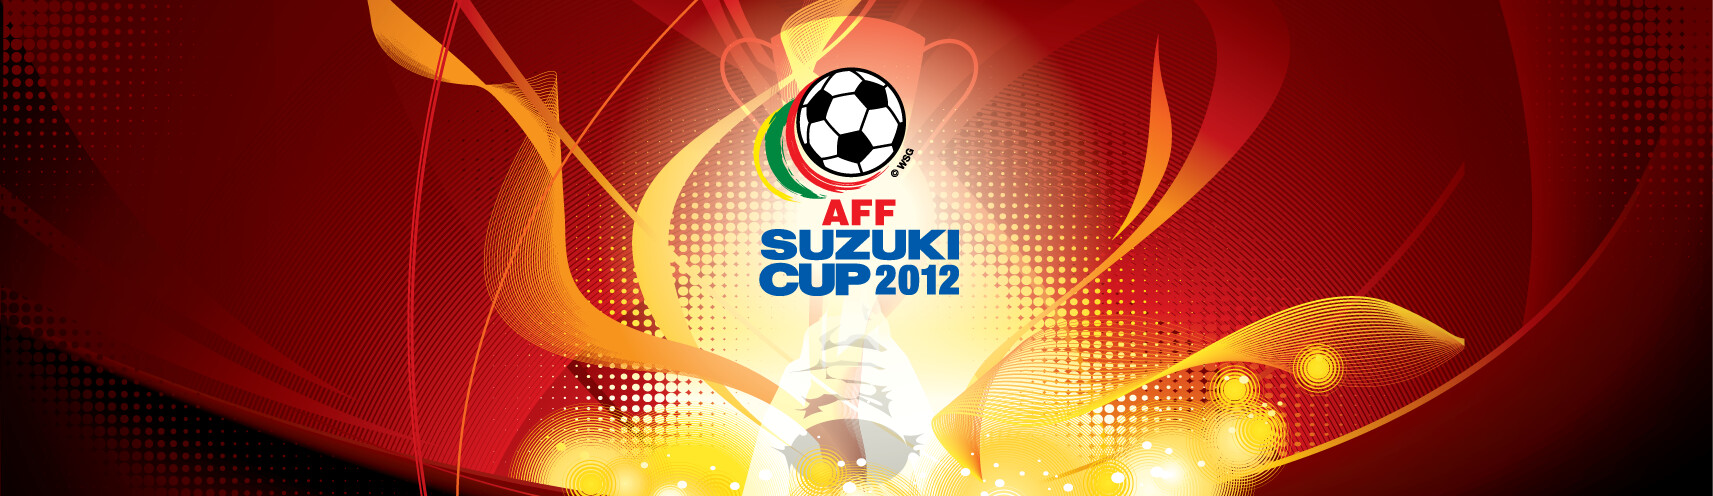 Suzuki cup